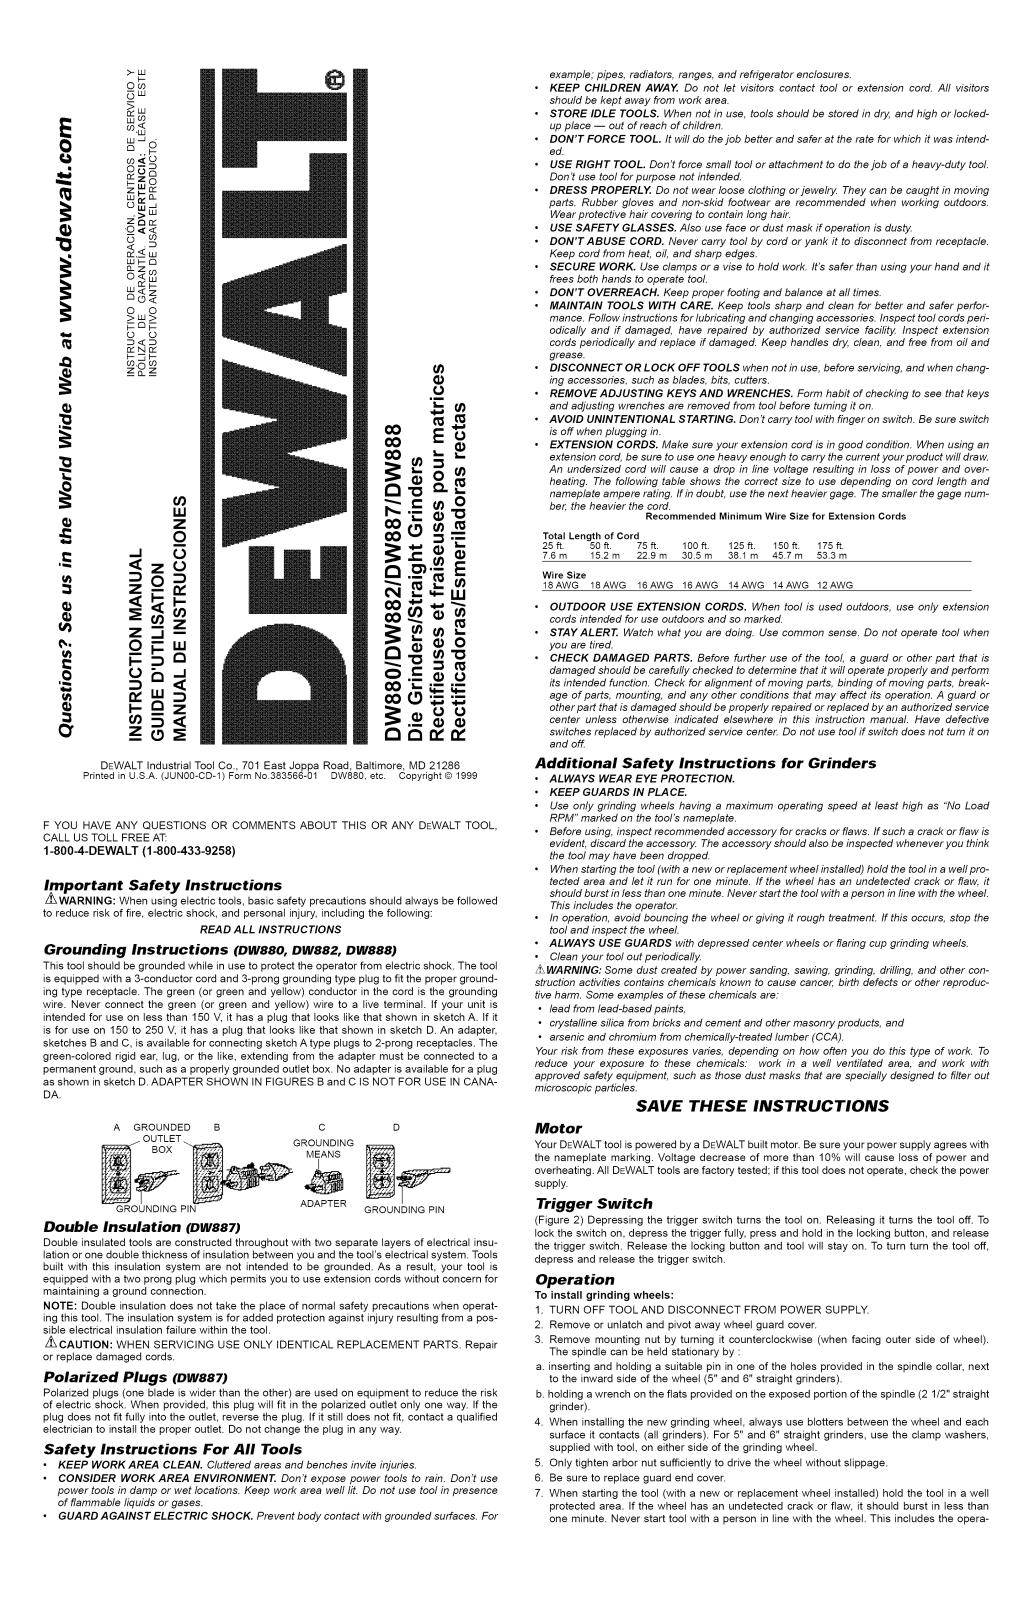 DeWalt DW888 TYPE2, DW888 TYPE1, DW887 TYPE2, DW887 TYPE1, DW882 TYPE1 Owner’s Manual